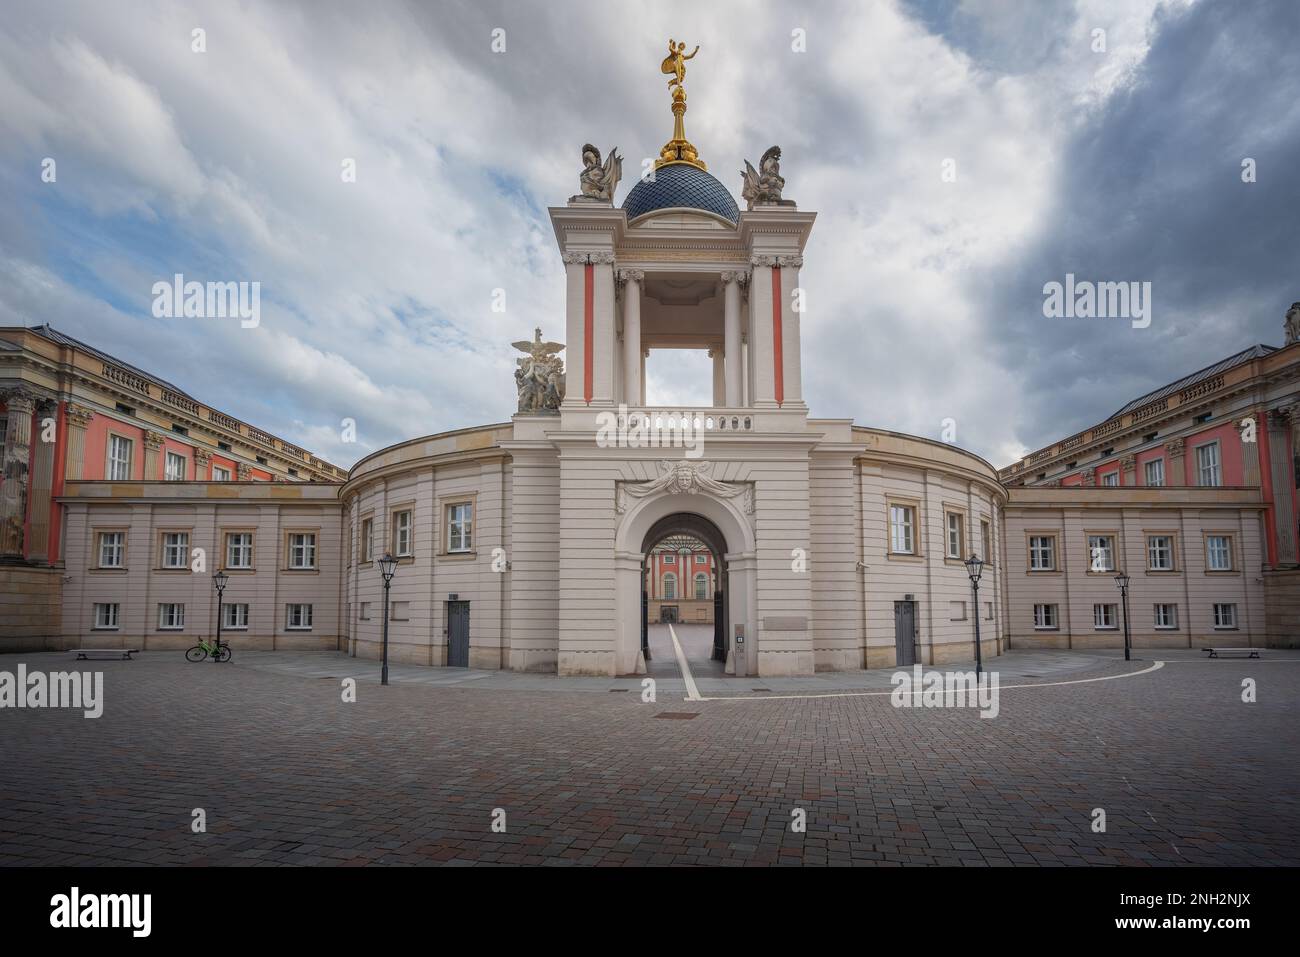 Fortuna Portal e Brandenburg Landtag (Parlamento) nella Piazza del mercato Vecchio - Potsdam, Brandeburgo, Germania Foto Stock